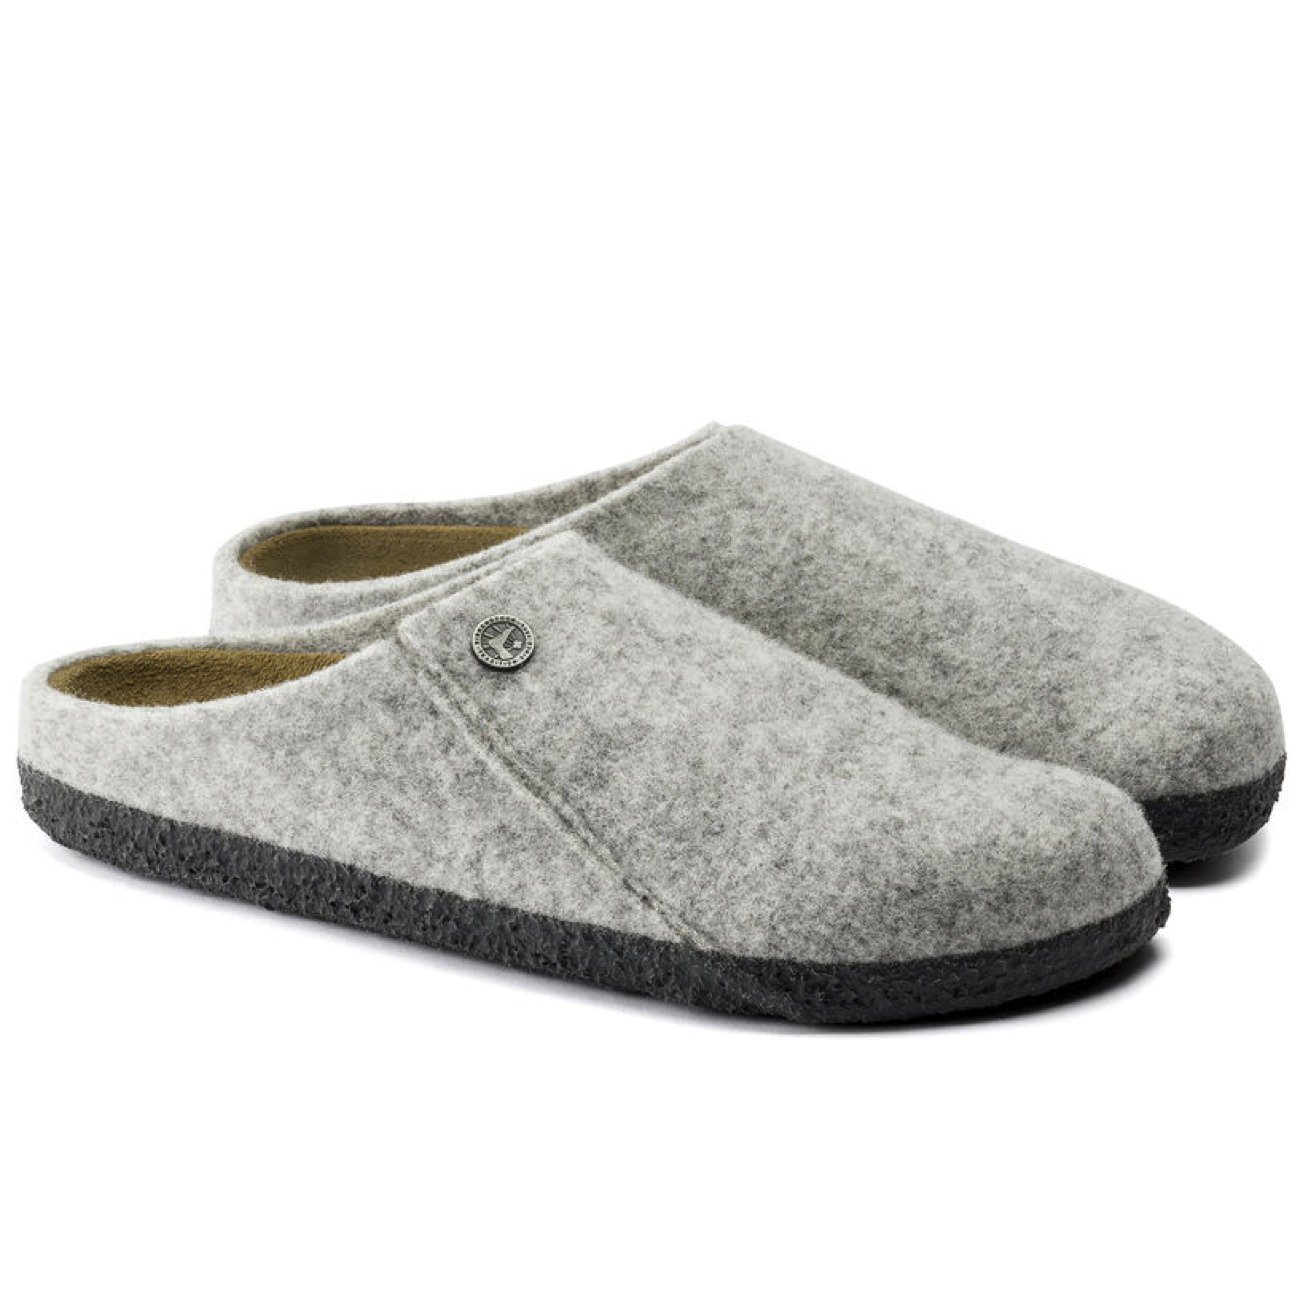 Birkenstock Seasonal, Zermatt, Wool Felt, Narrow Fit, Light Grey House Shoes Birkenstock Seasonal Light Grey 38 